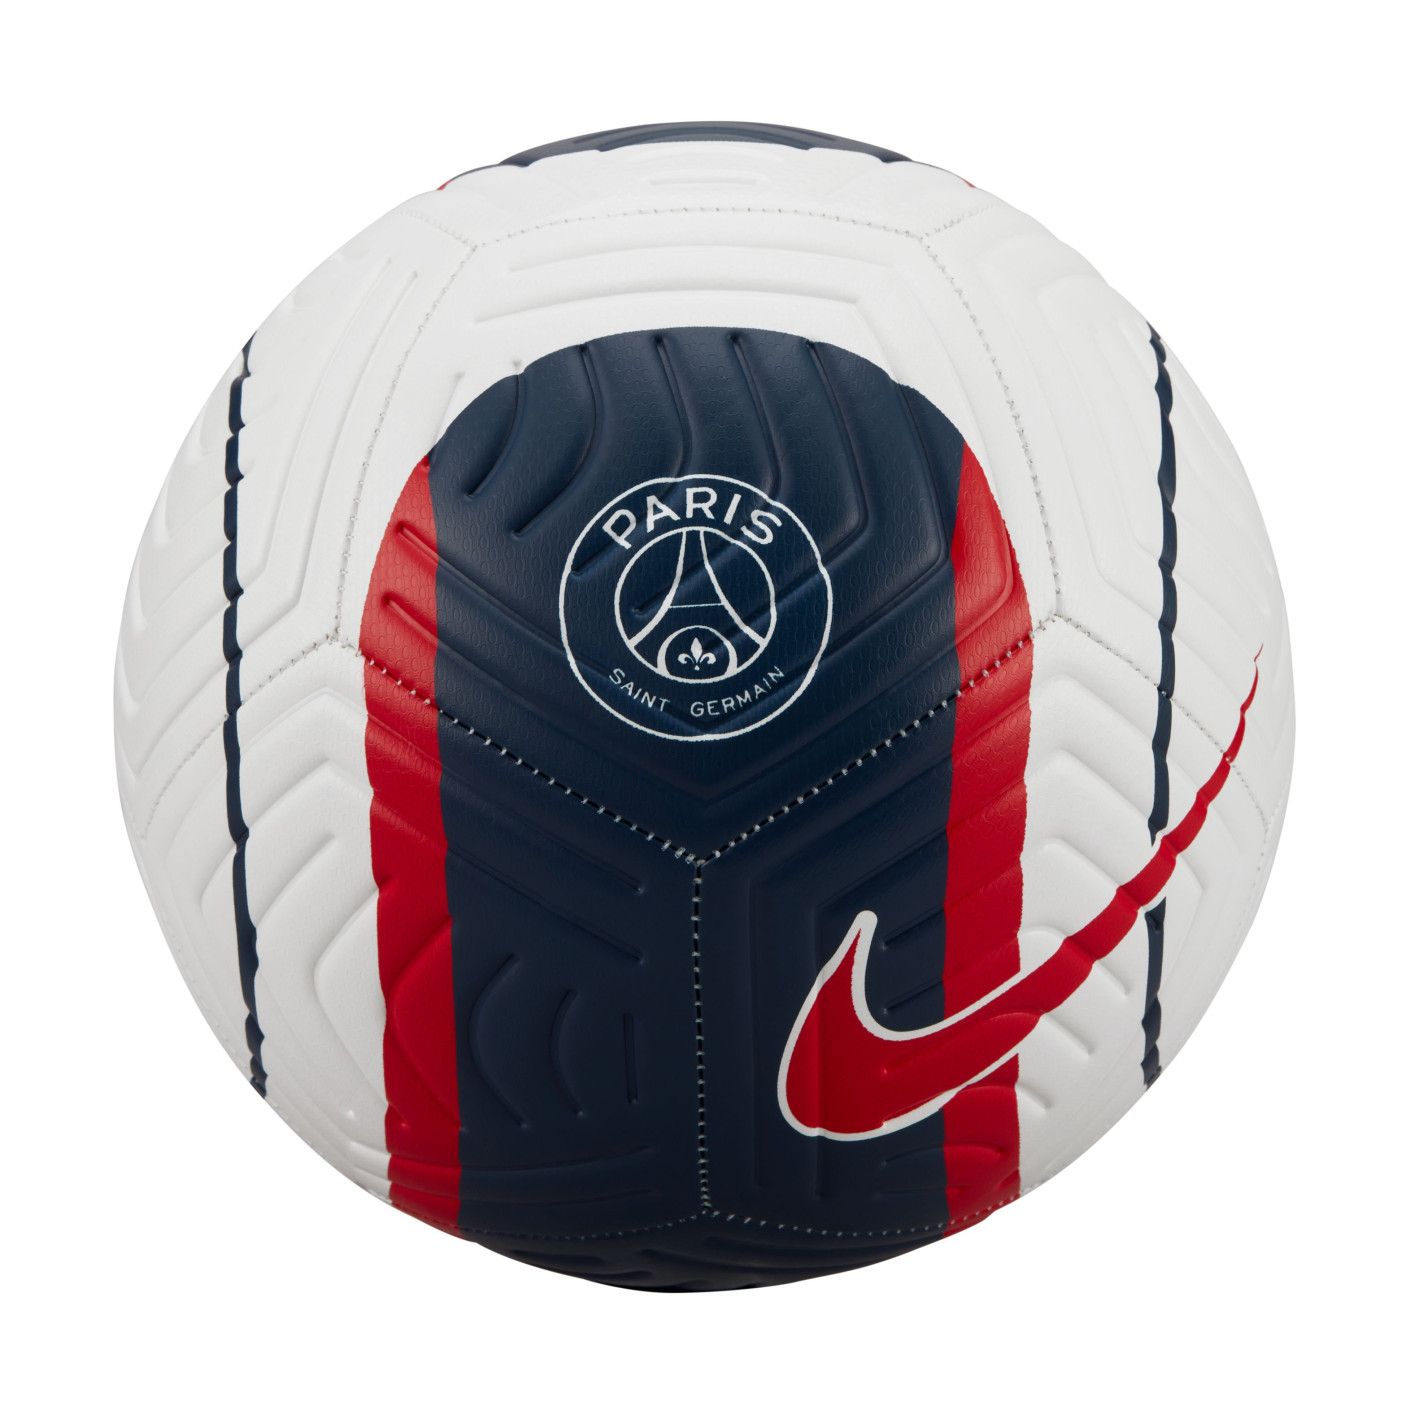 Nike Ballon Football CR7 Strike Vert